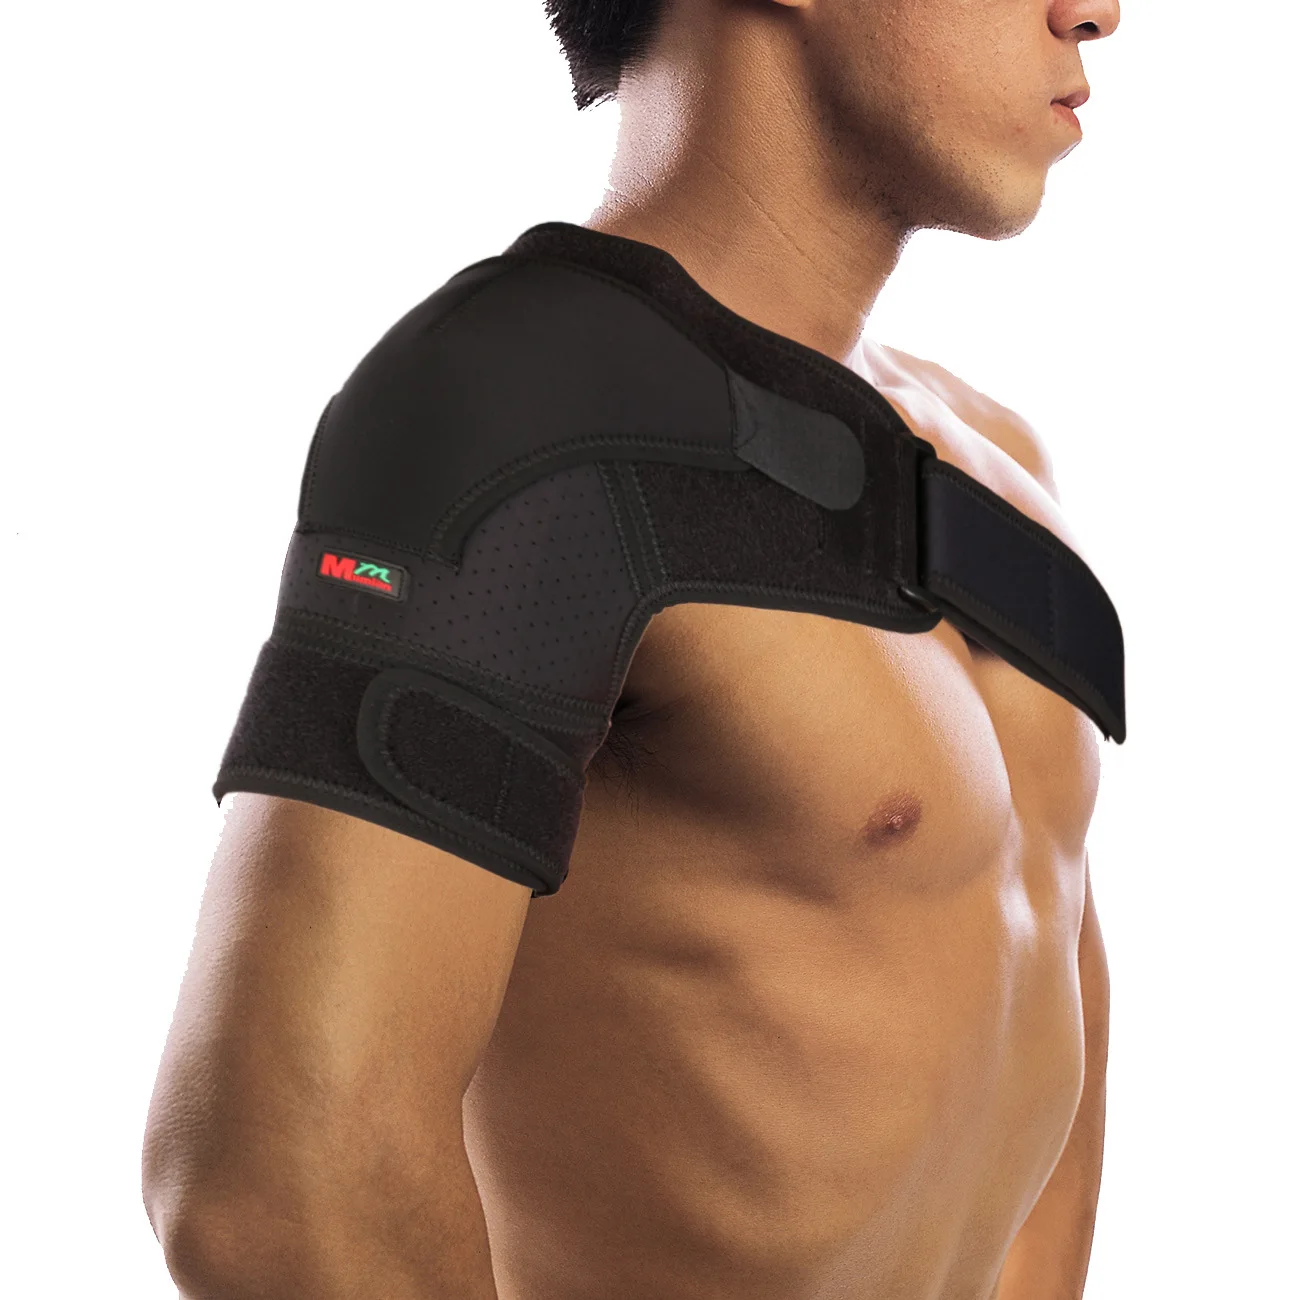 Дышащая защита через плечо G02, регулируемое давление, в одном пакете от AliExpress WW